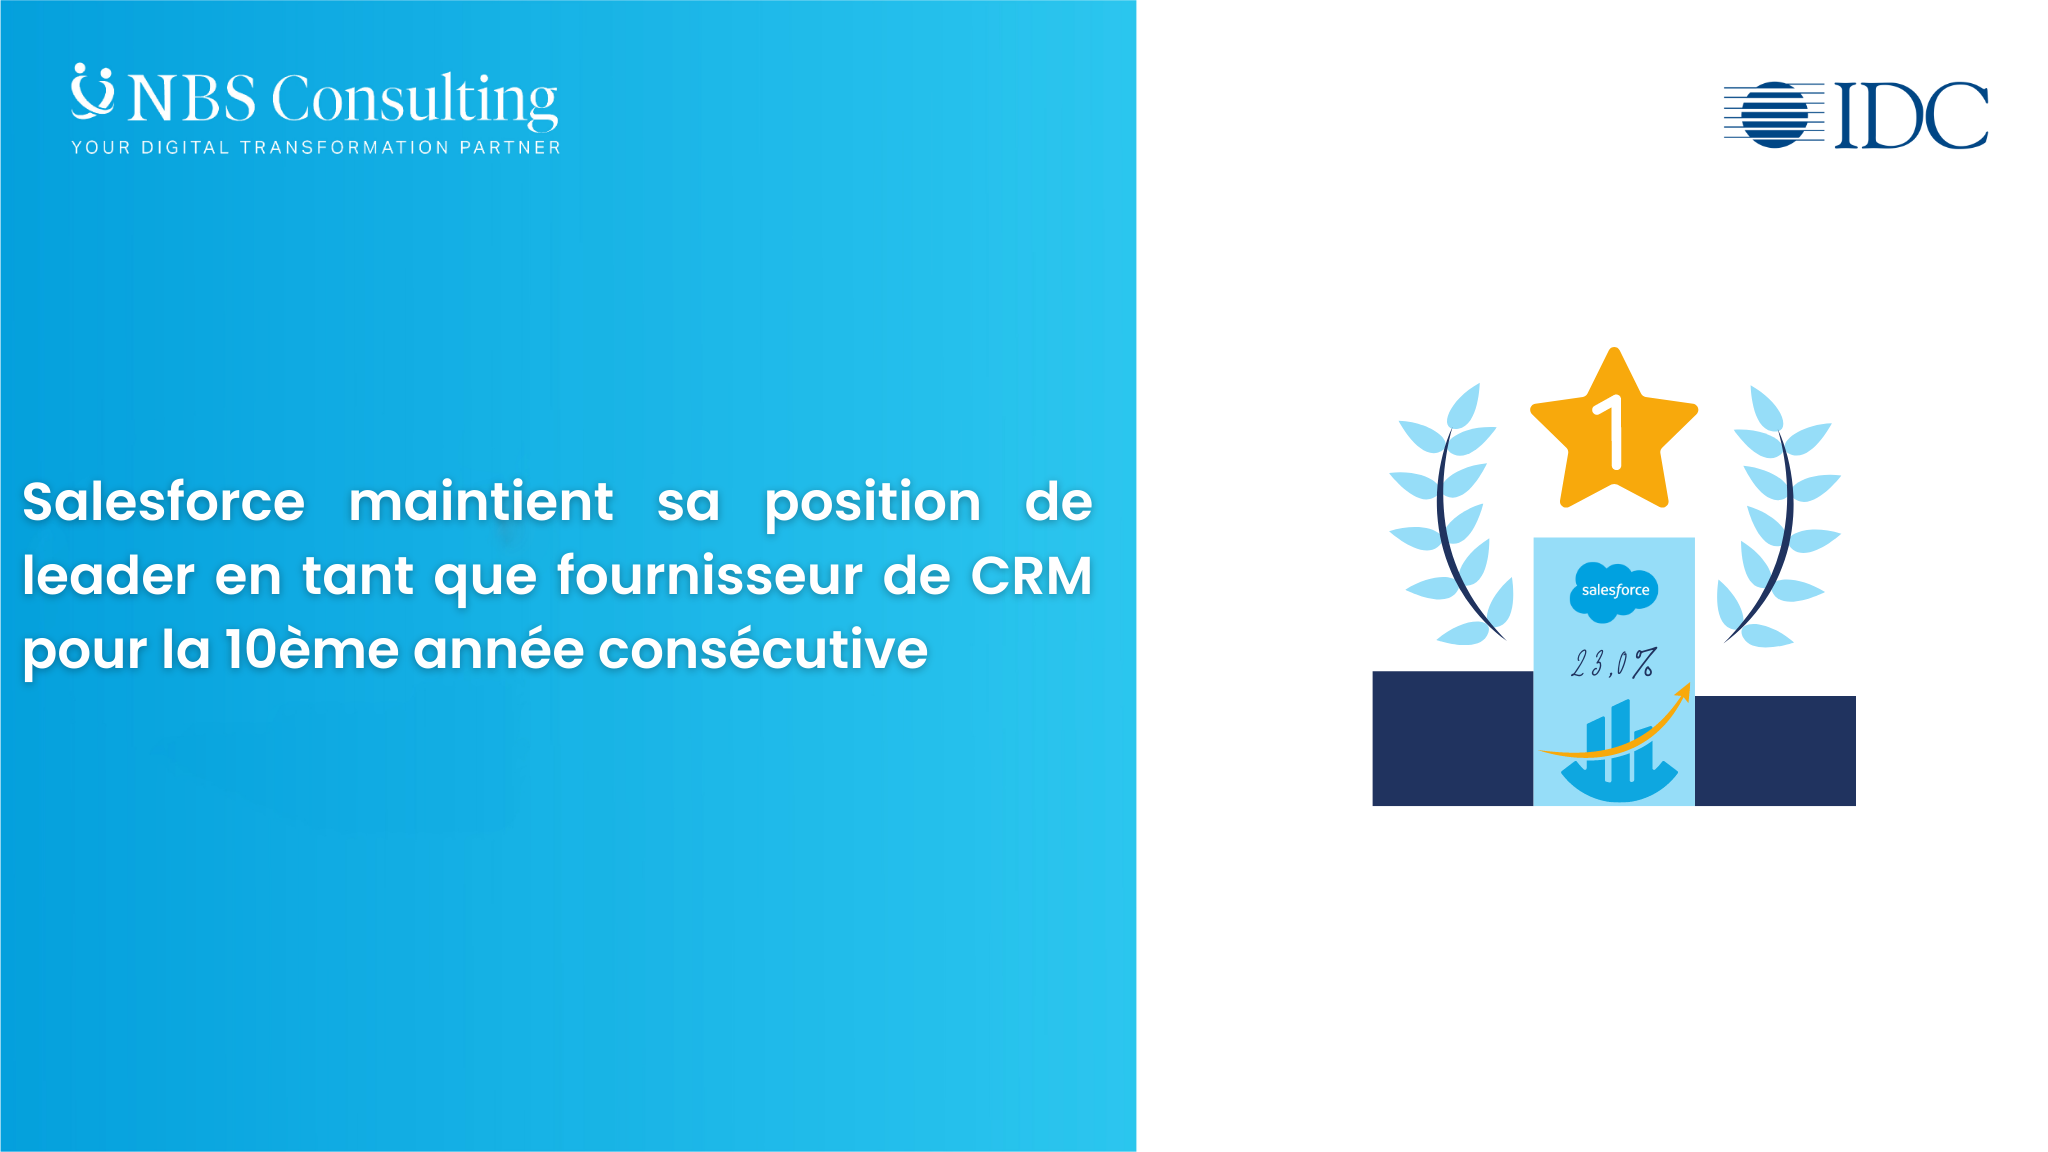 Salesforce maintient sa position de leader en tant que fournisseur de CRM pour la 10ème année consécutive